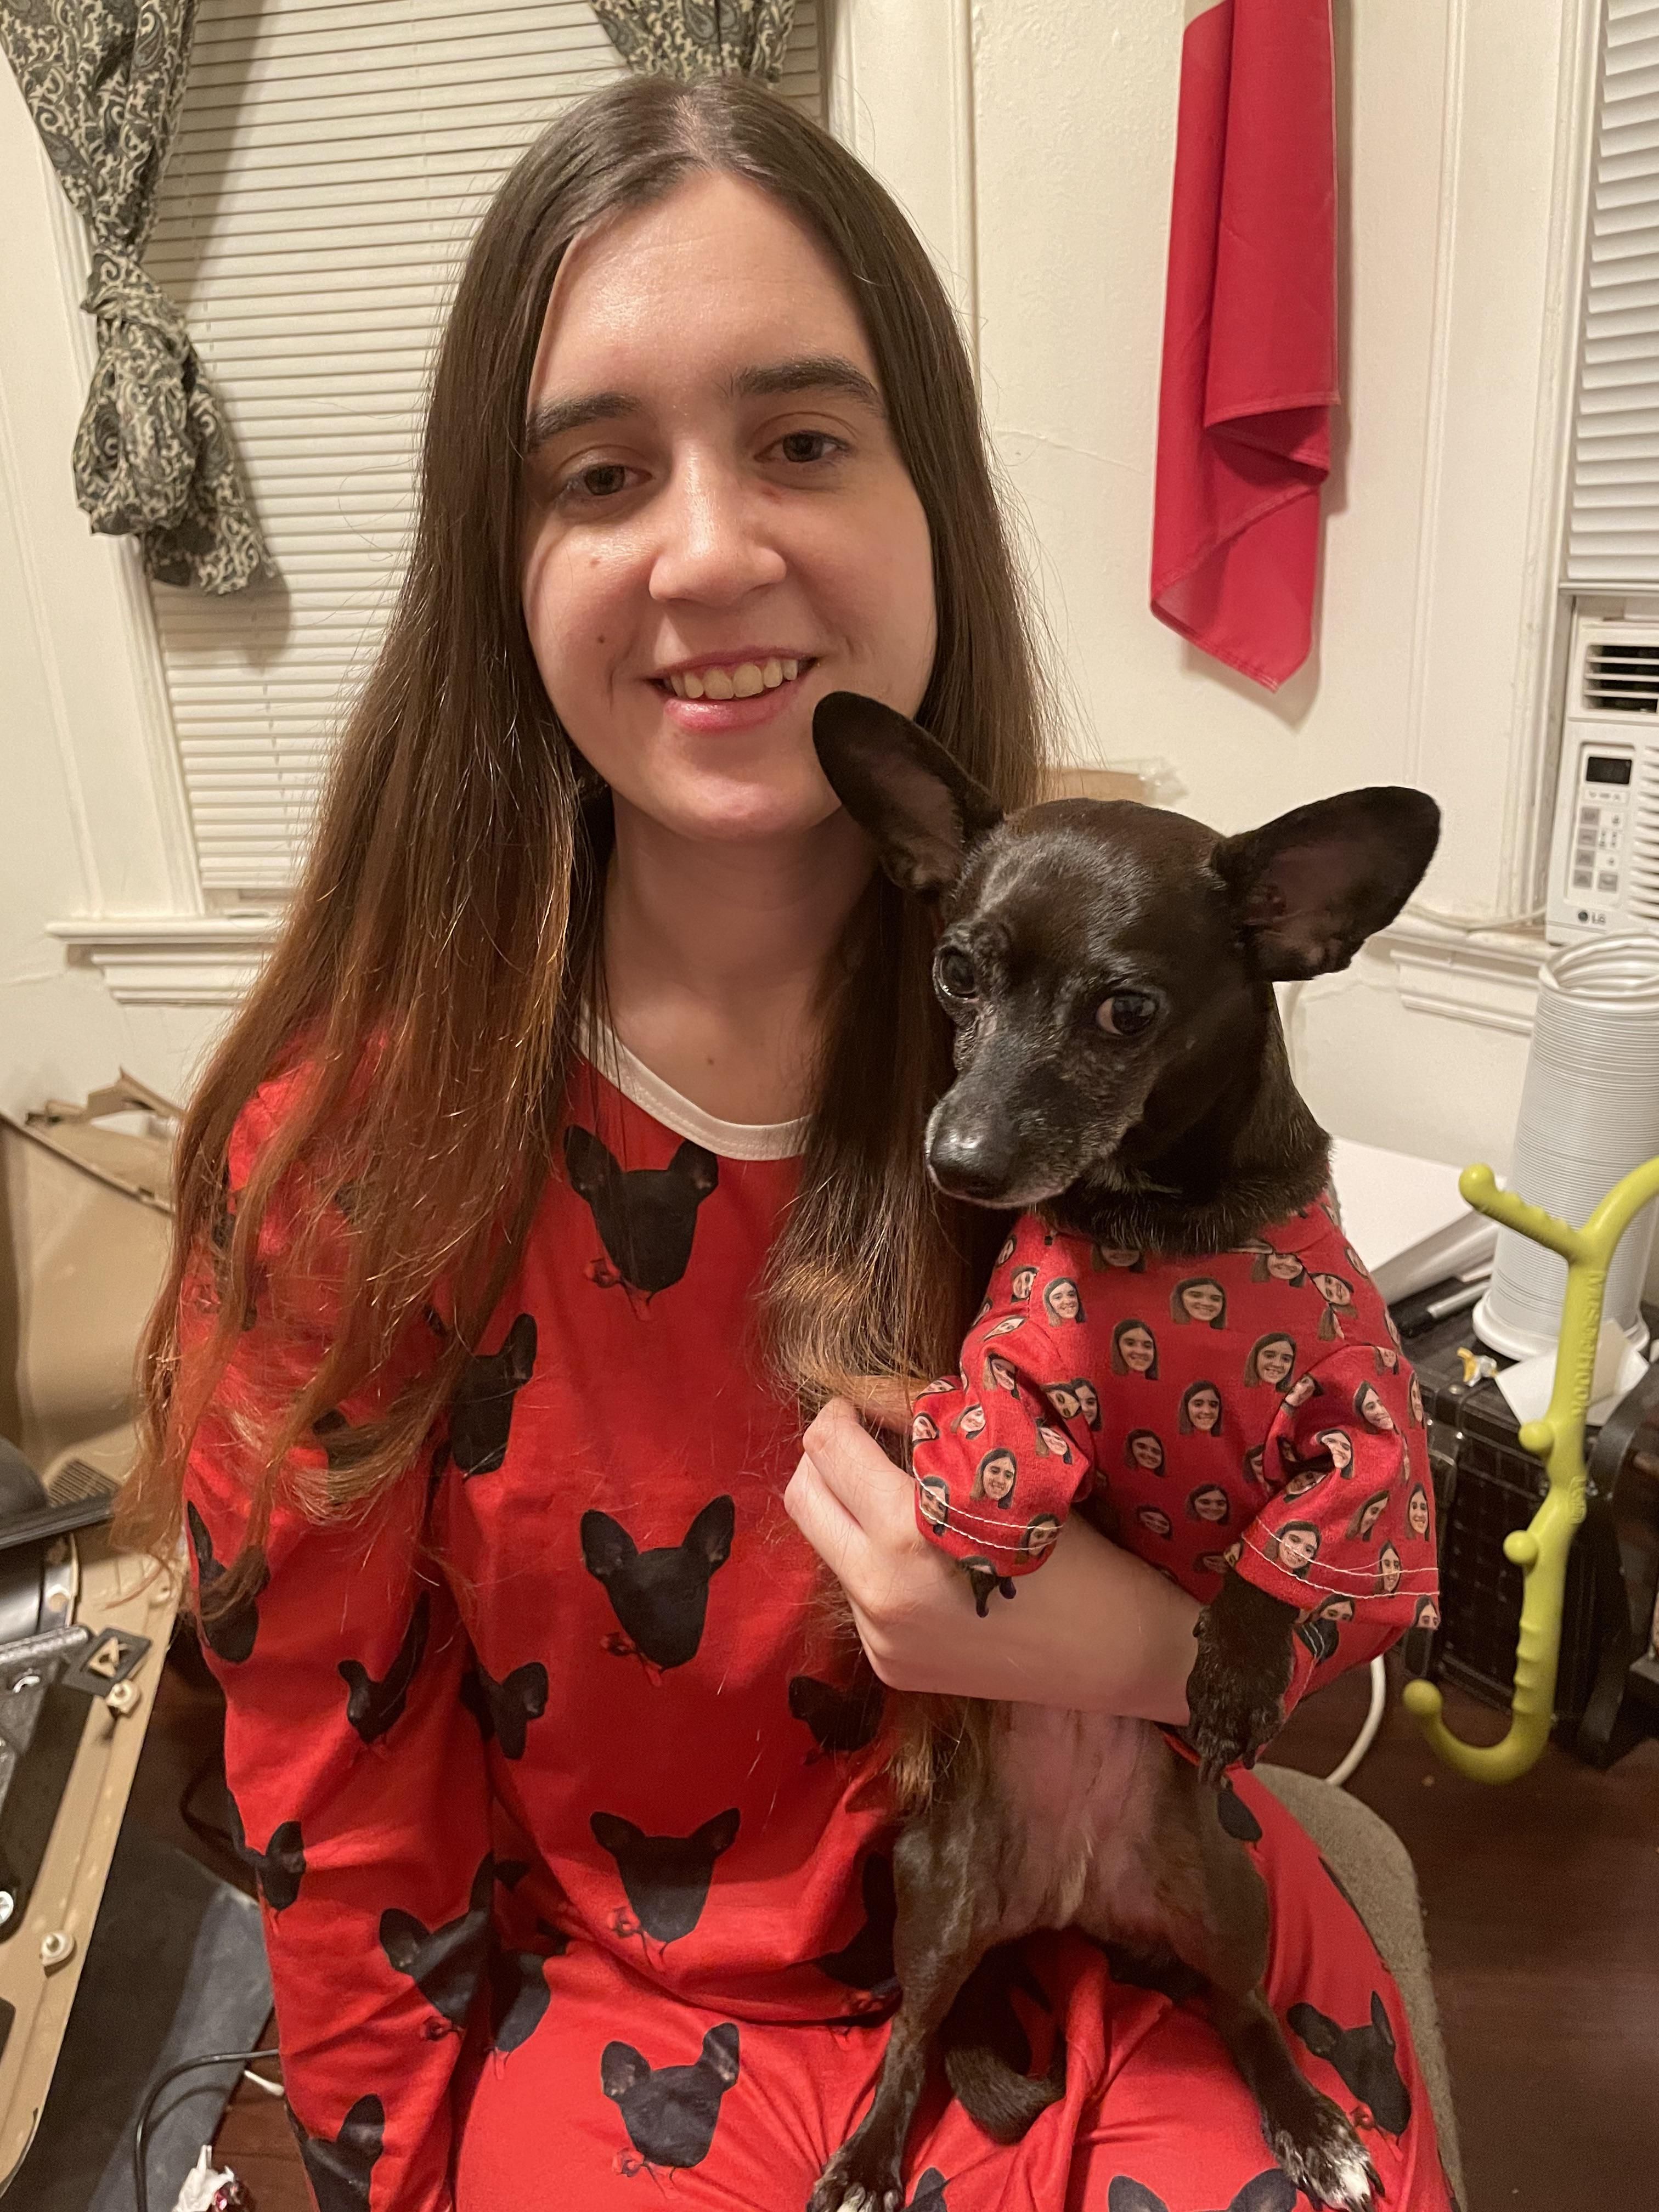 For Christmas, my mom got my dog and I matching pajamas.